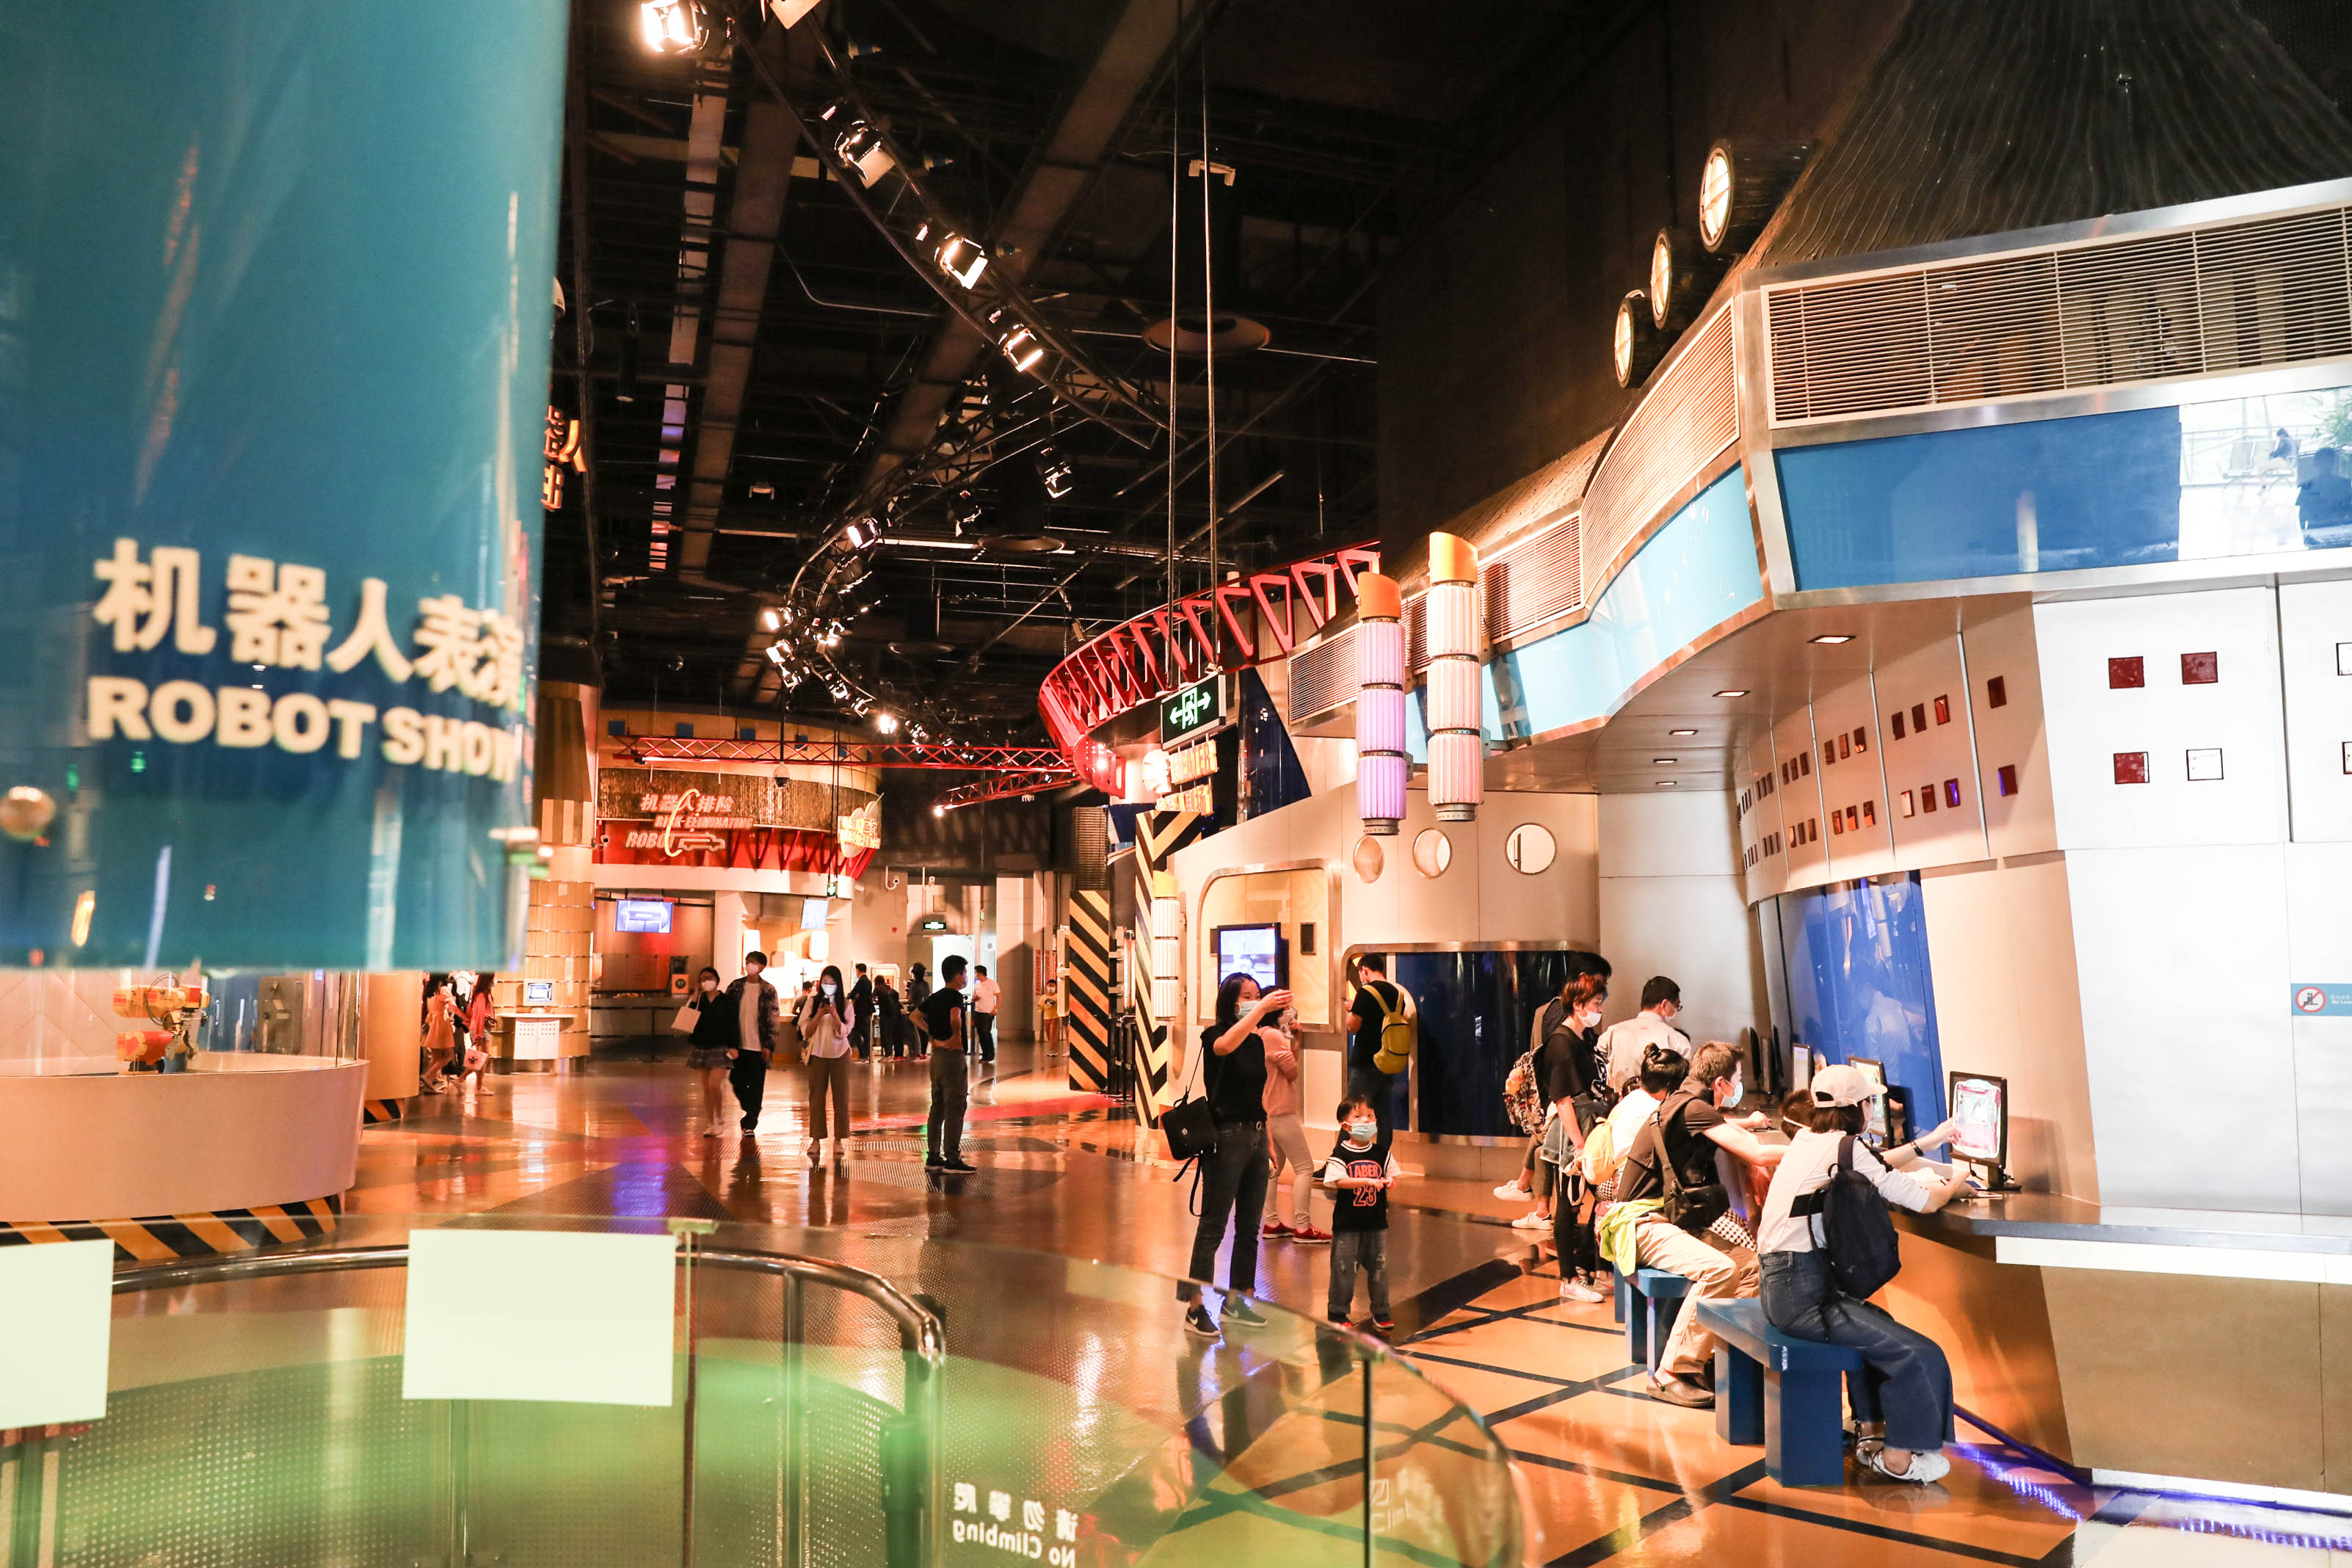 文化空间 Culture Space - 中国科技馆华——夏之光展厅